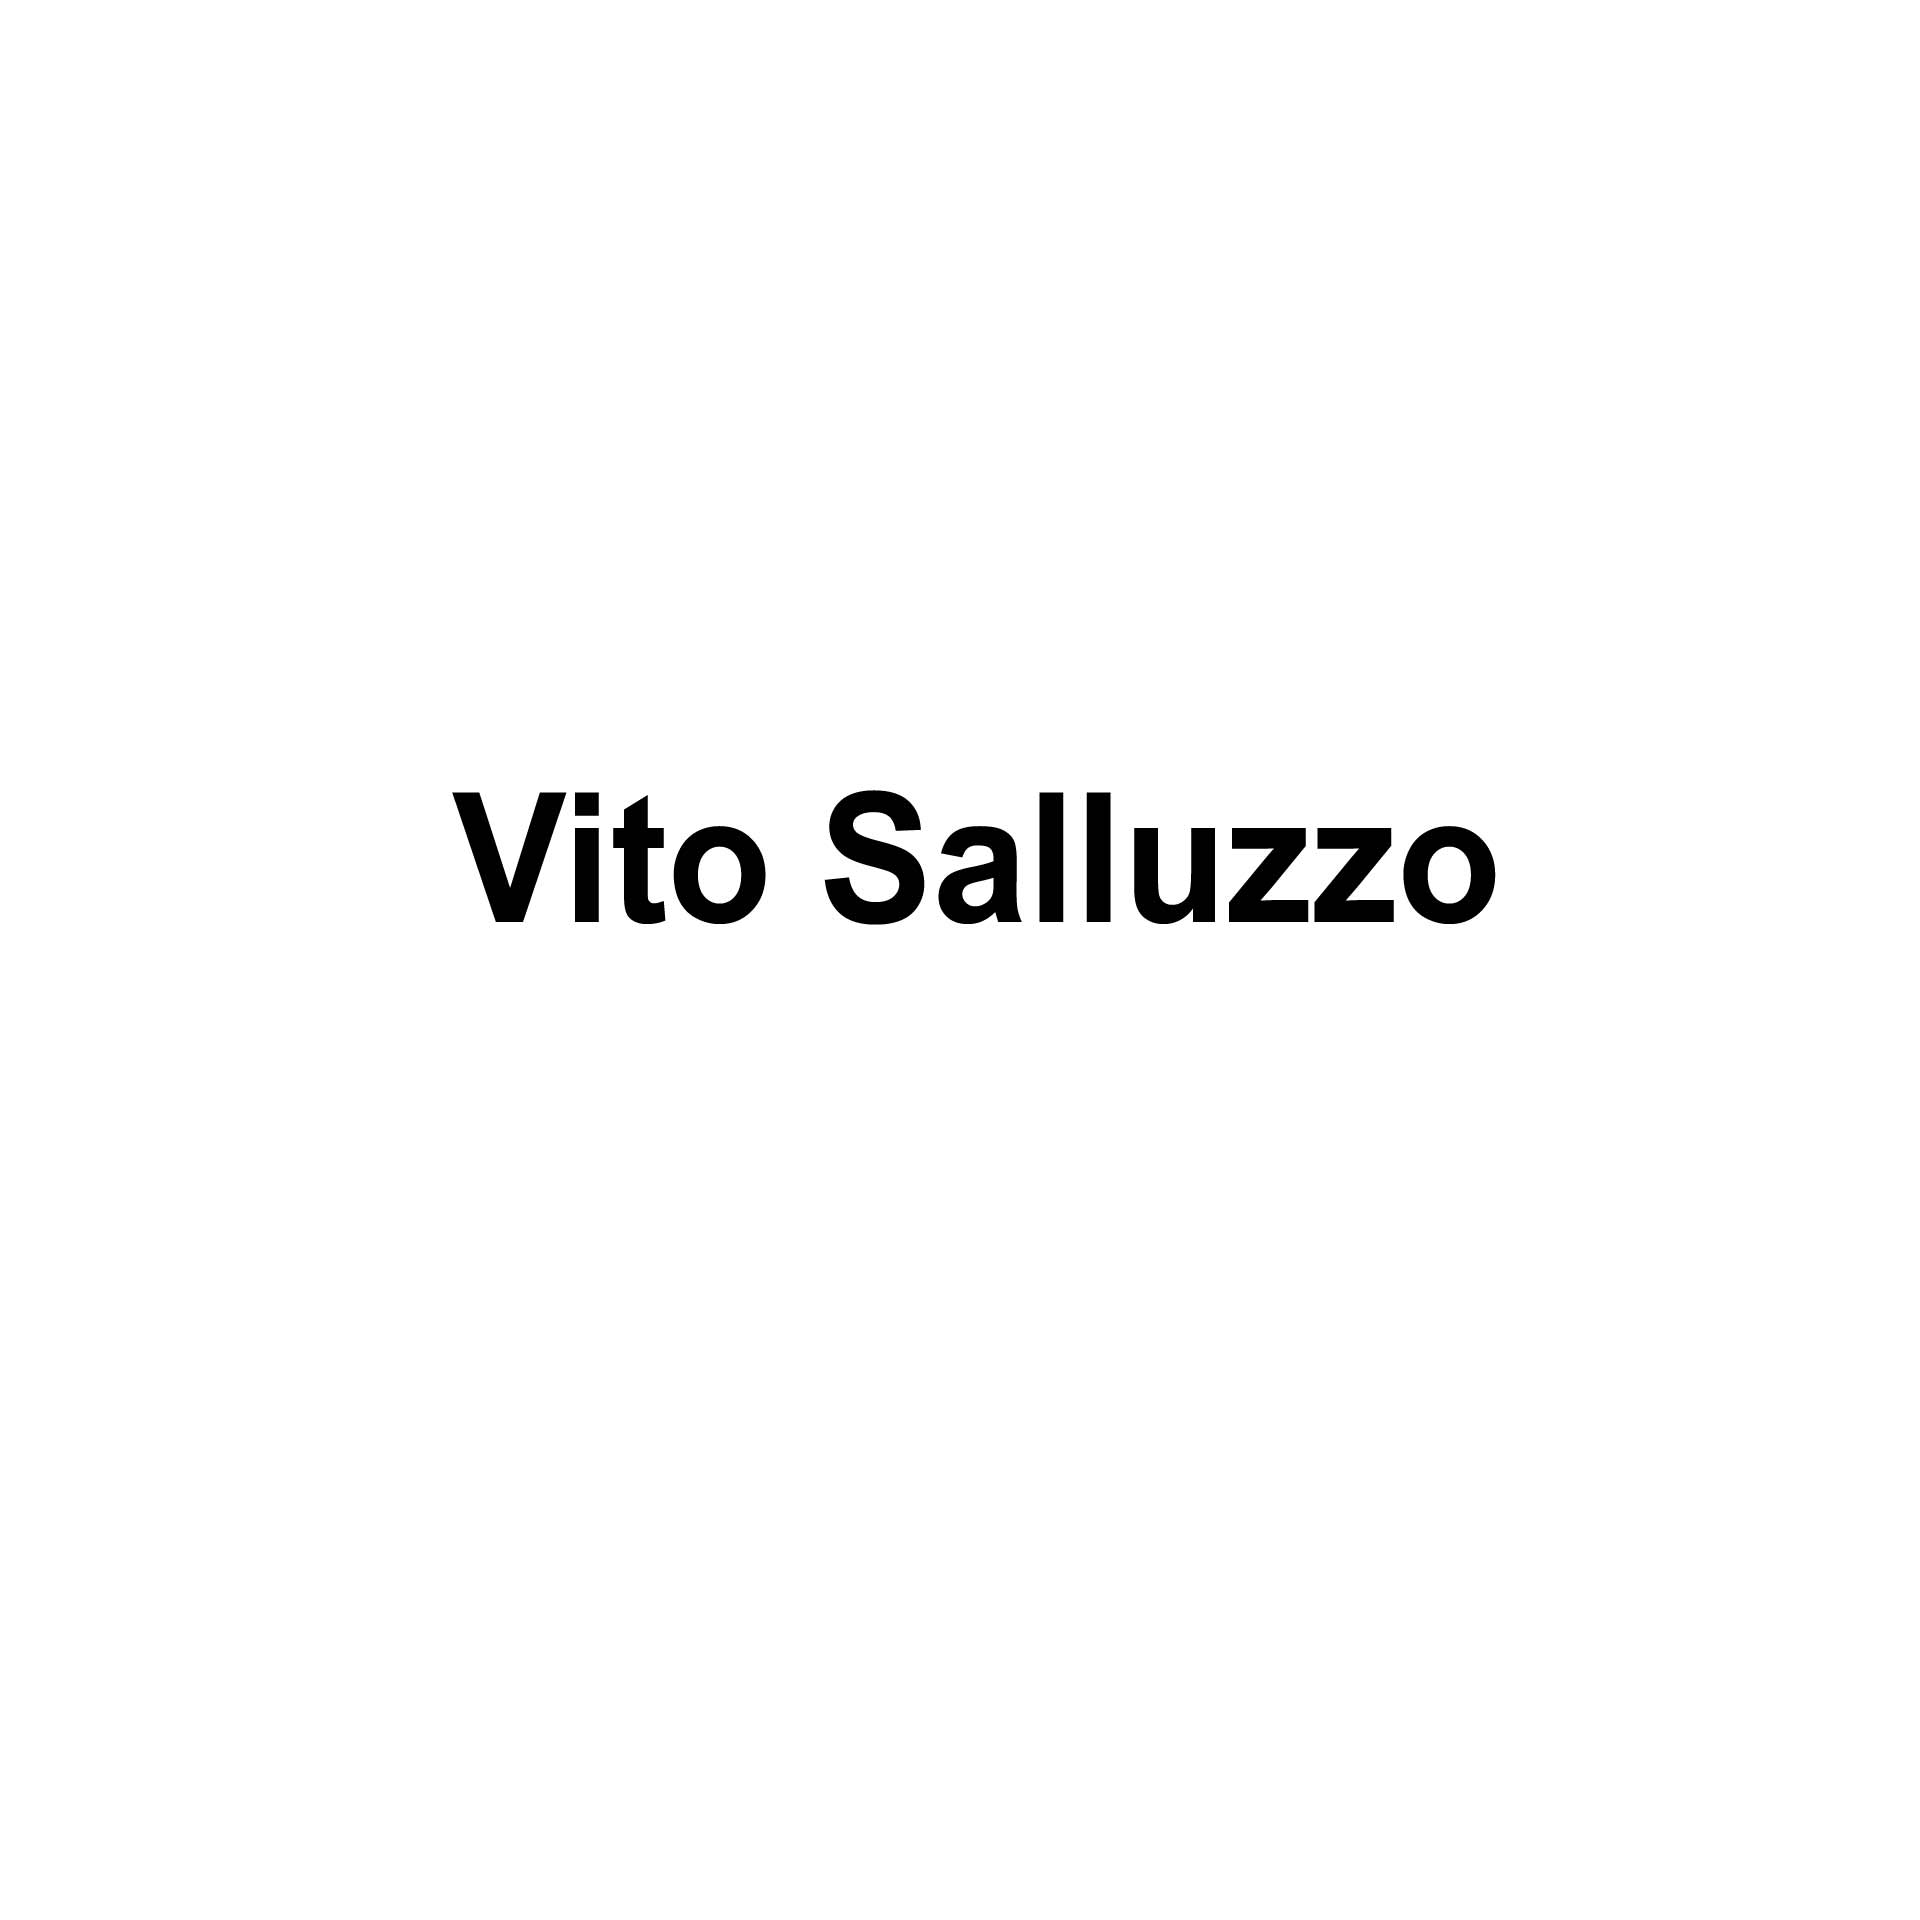 Vito Salluzzo